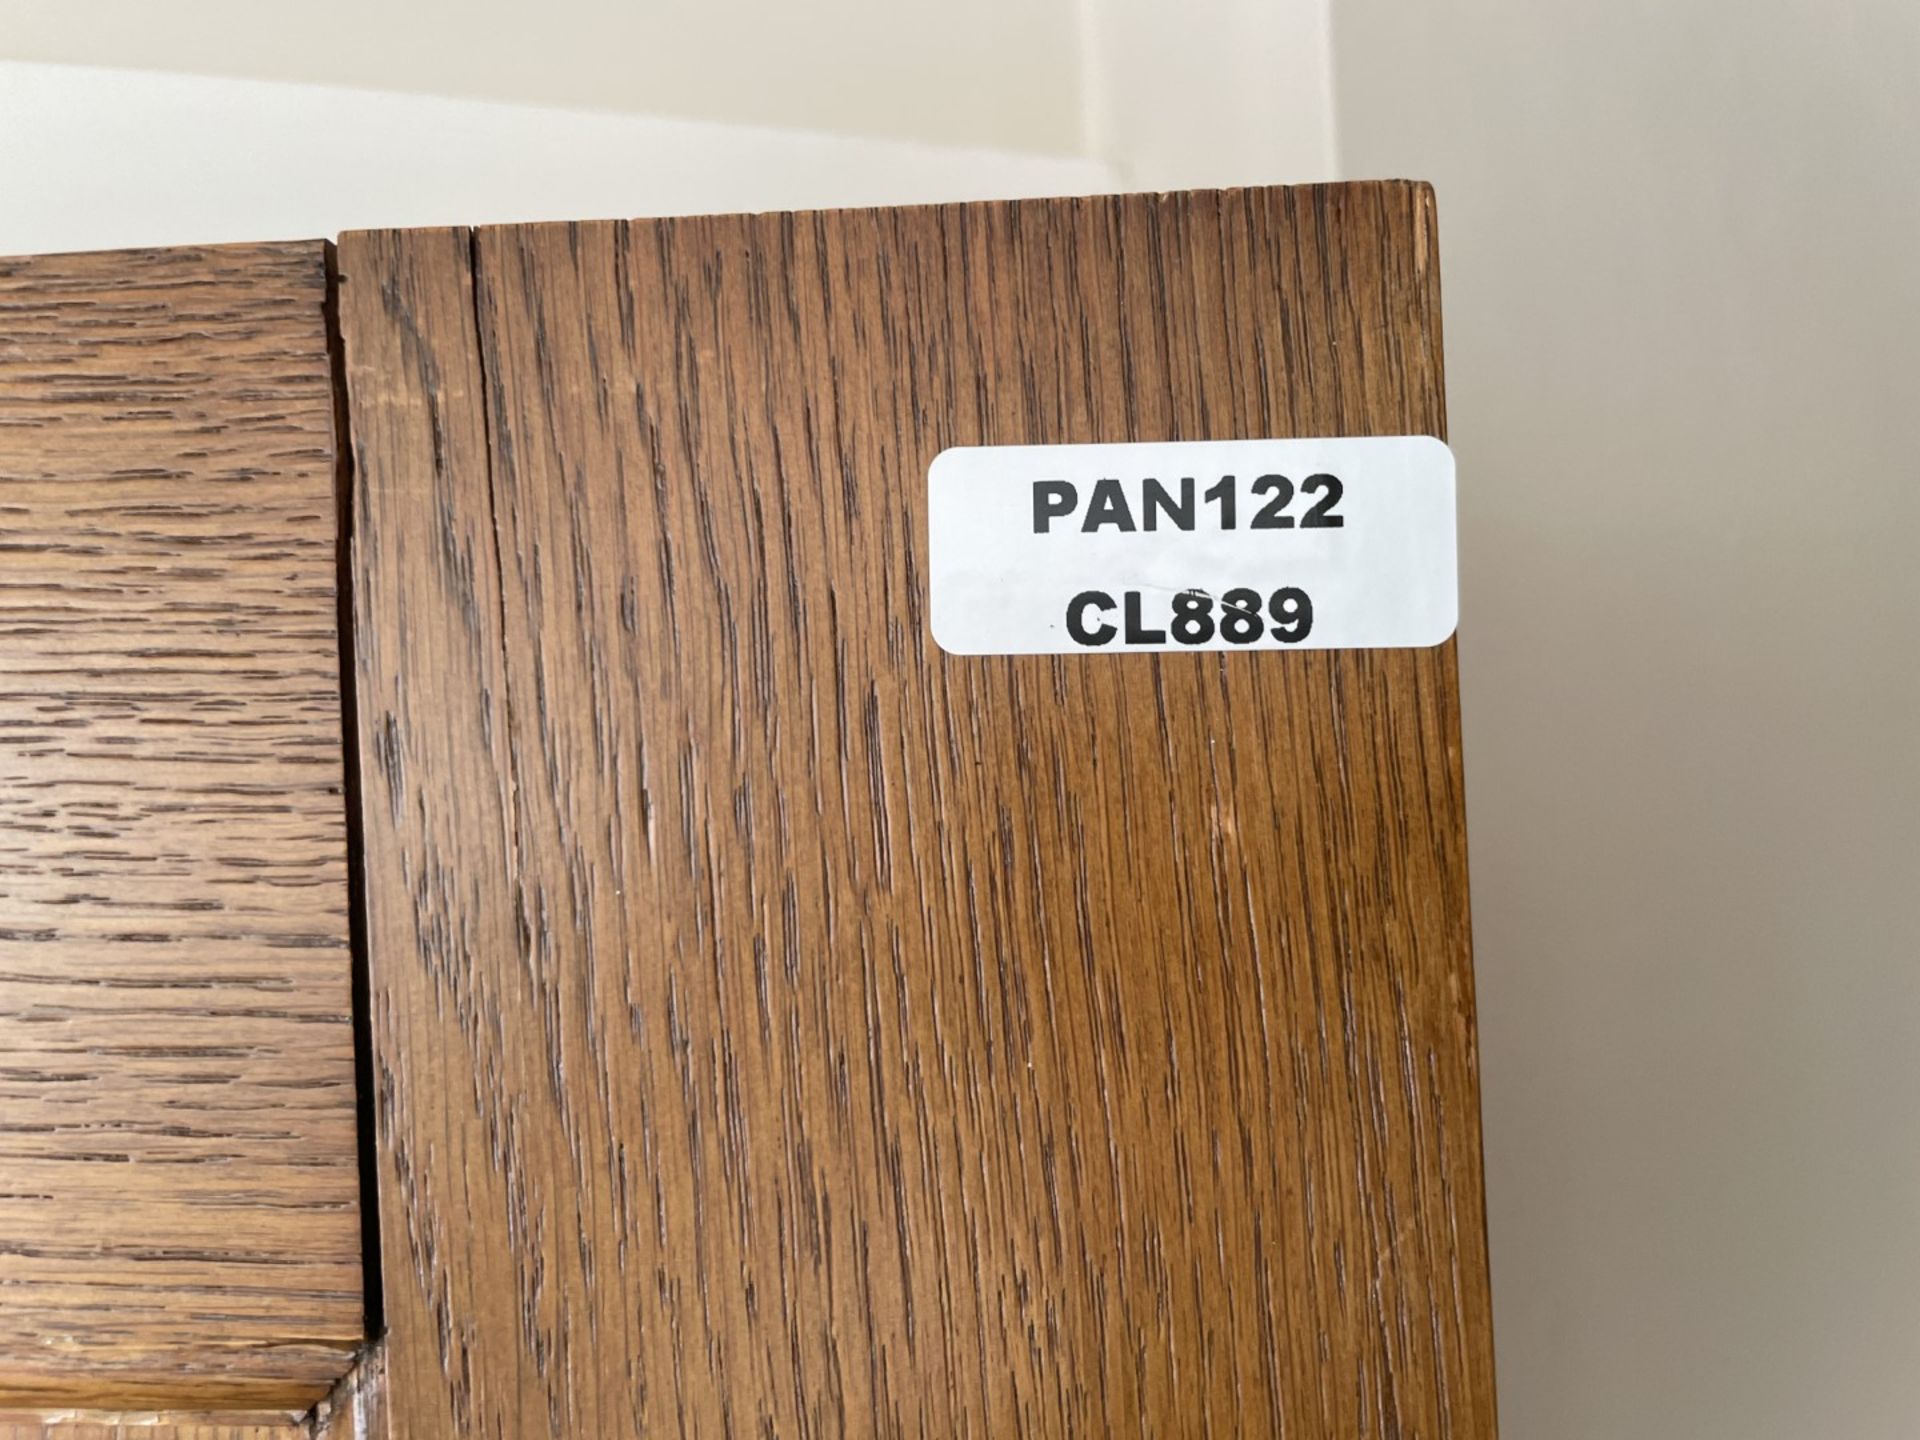 1 x Solid Wood Lockable Internal Door - Includes Handles and Hinges - Ref: PAN122 - NO VAT - Image 4 of 5